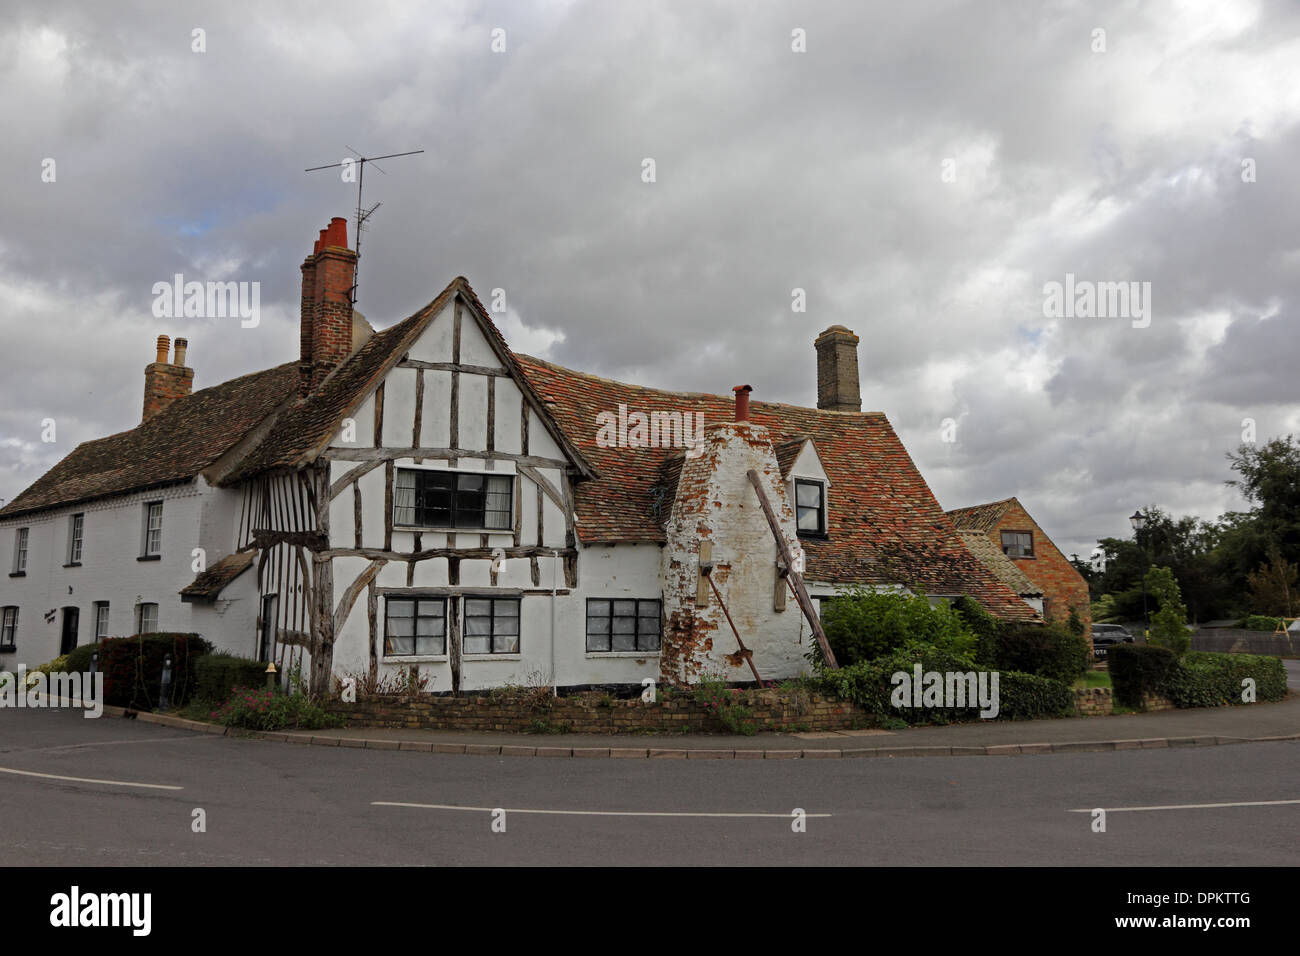 La maison à ossature de bois de style Tudor avec des problèmes structurels Banque D'Images